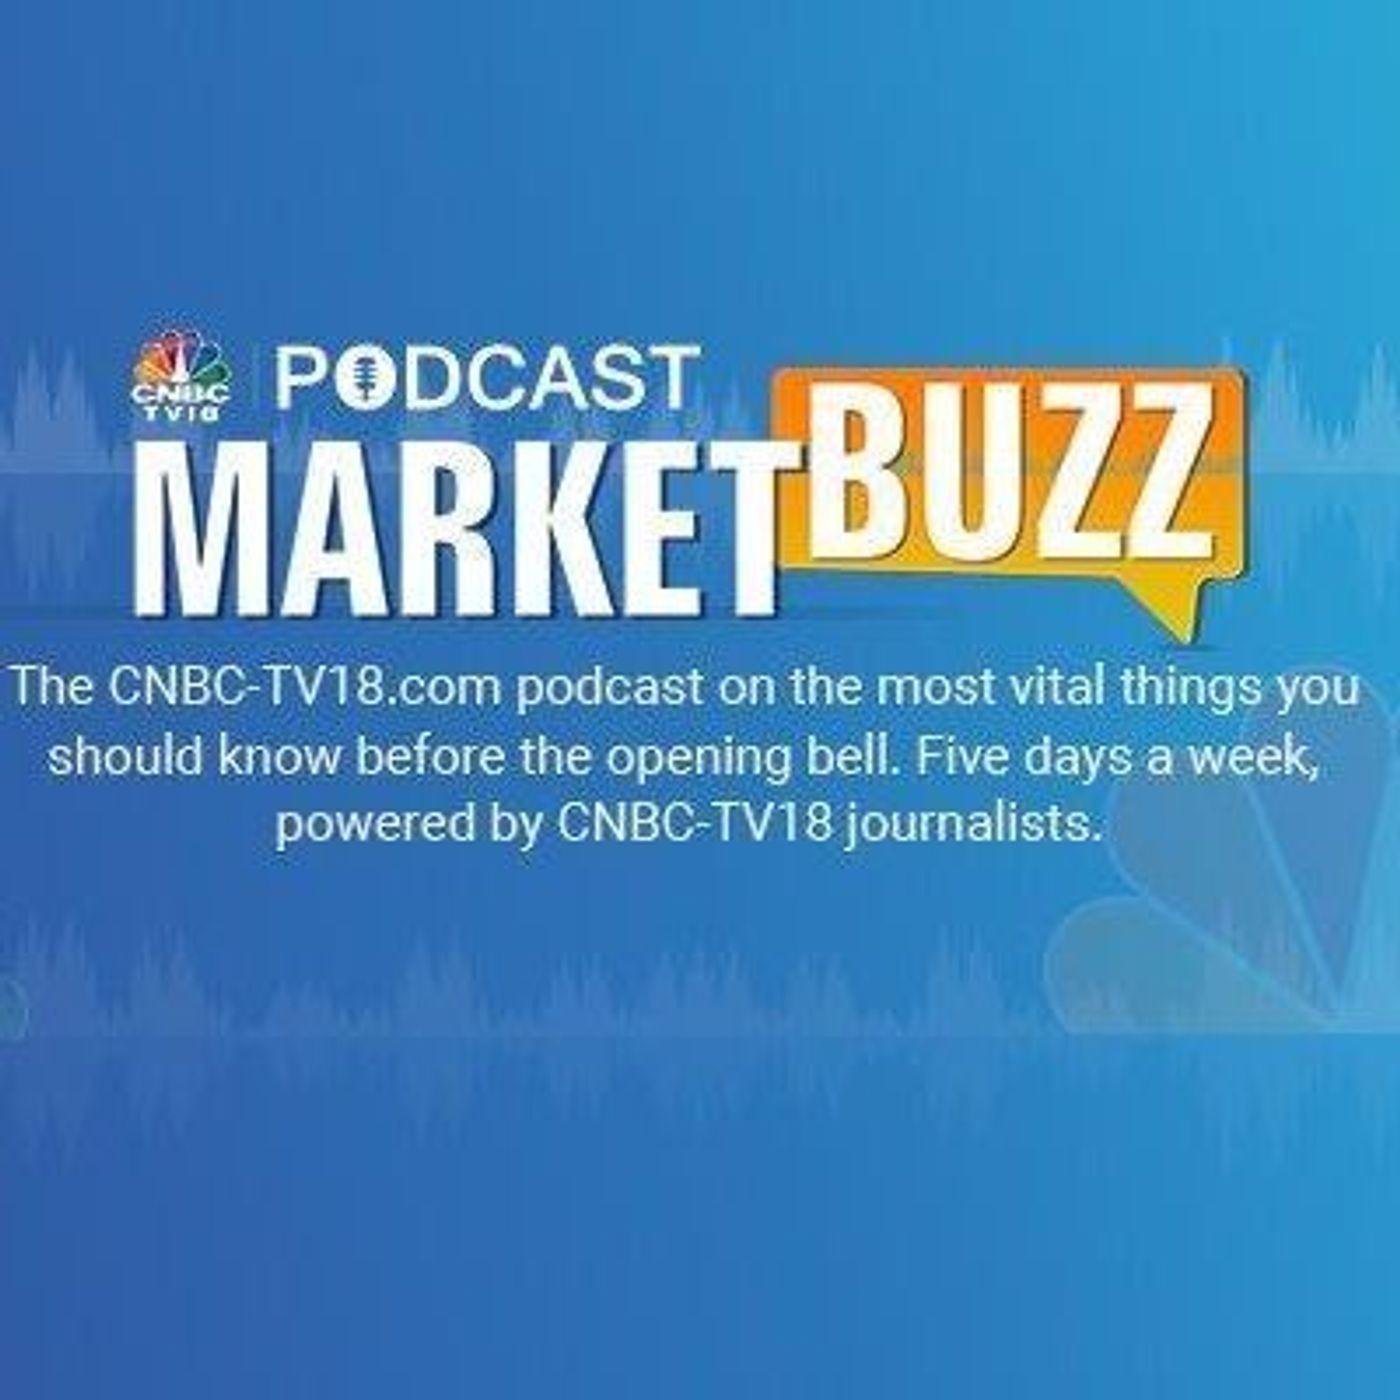 1258: Marketbuzz Podcast with Kanishka Sarkar: Sensex, Nifty 50 likely headed for flat start, Hindalco, IndiGo in focus